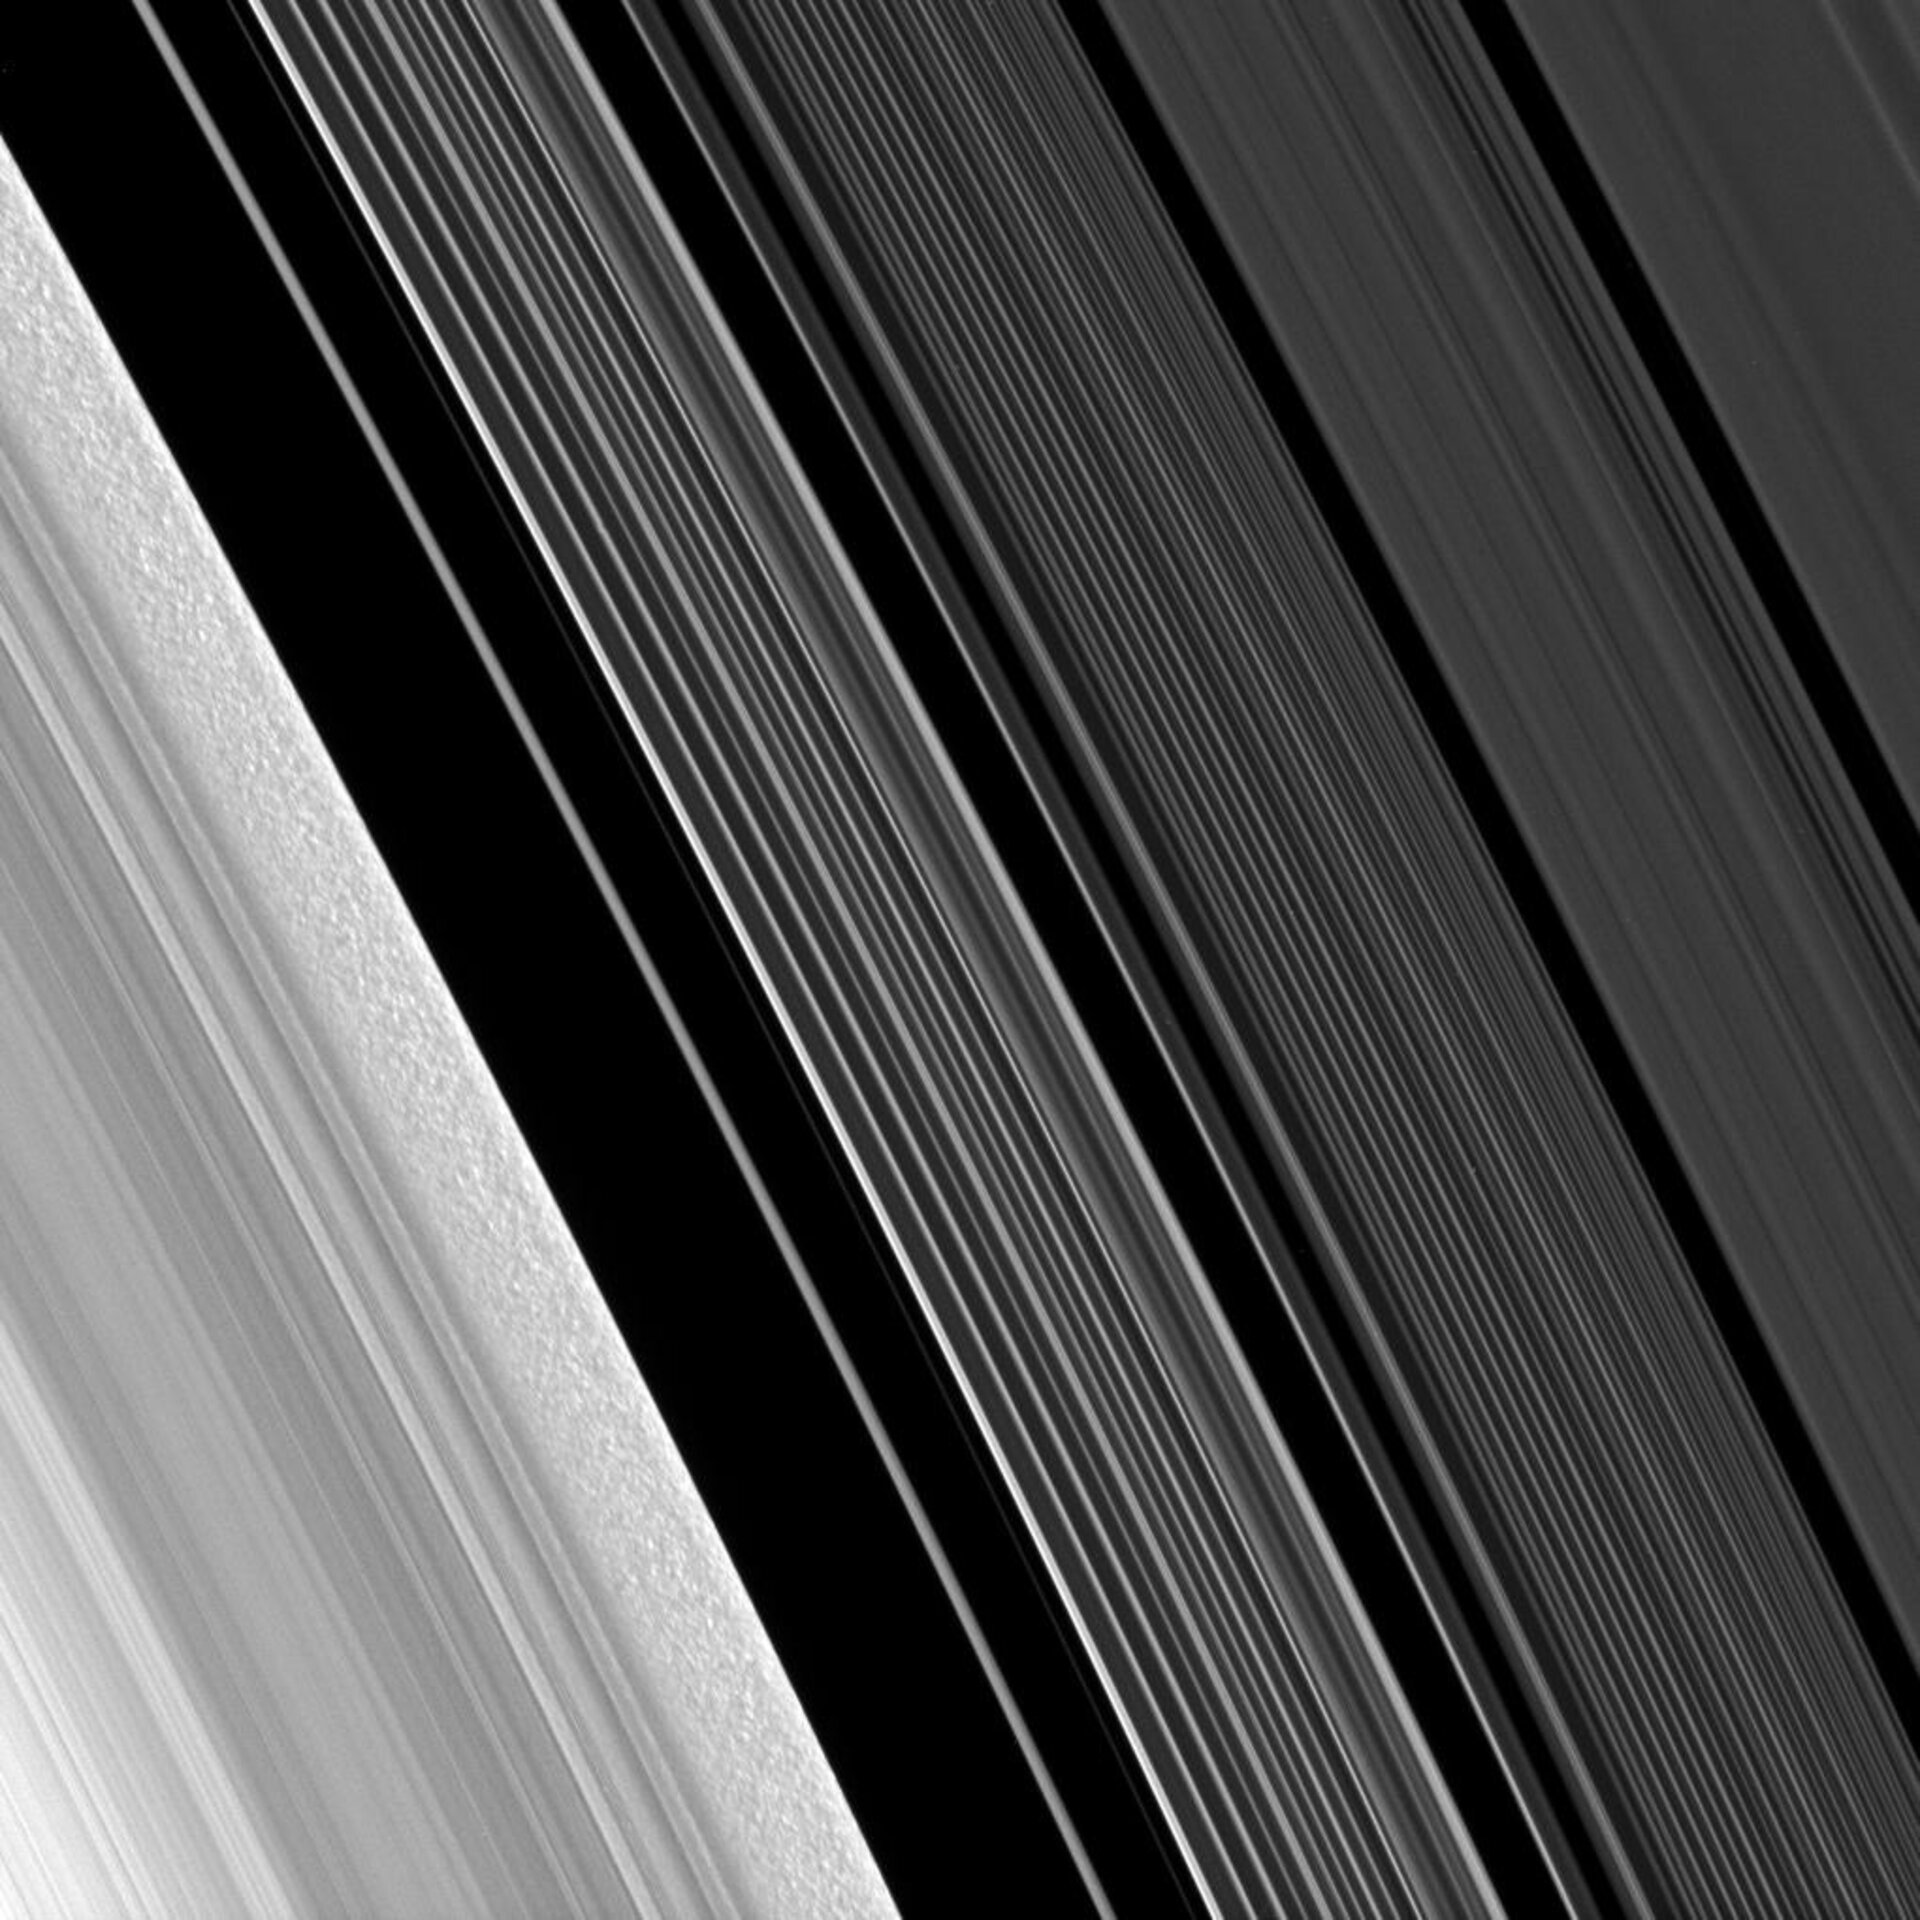 Grumos y filamentos en los anillos de Saturno